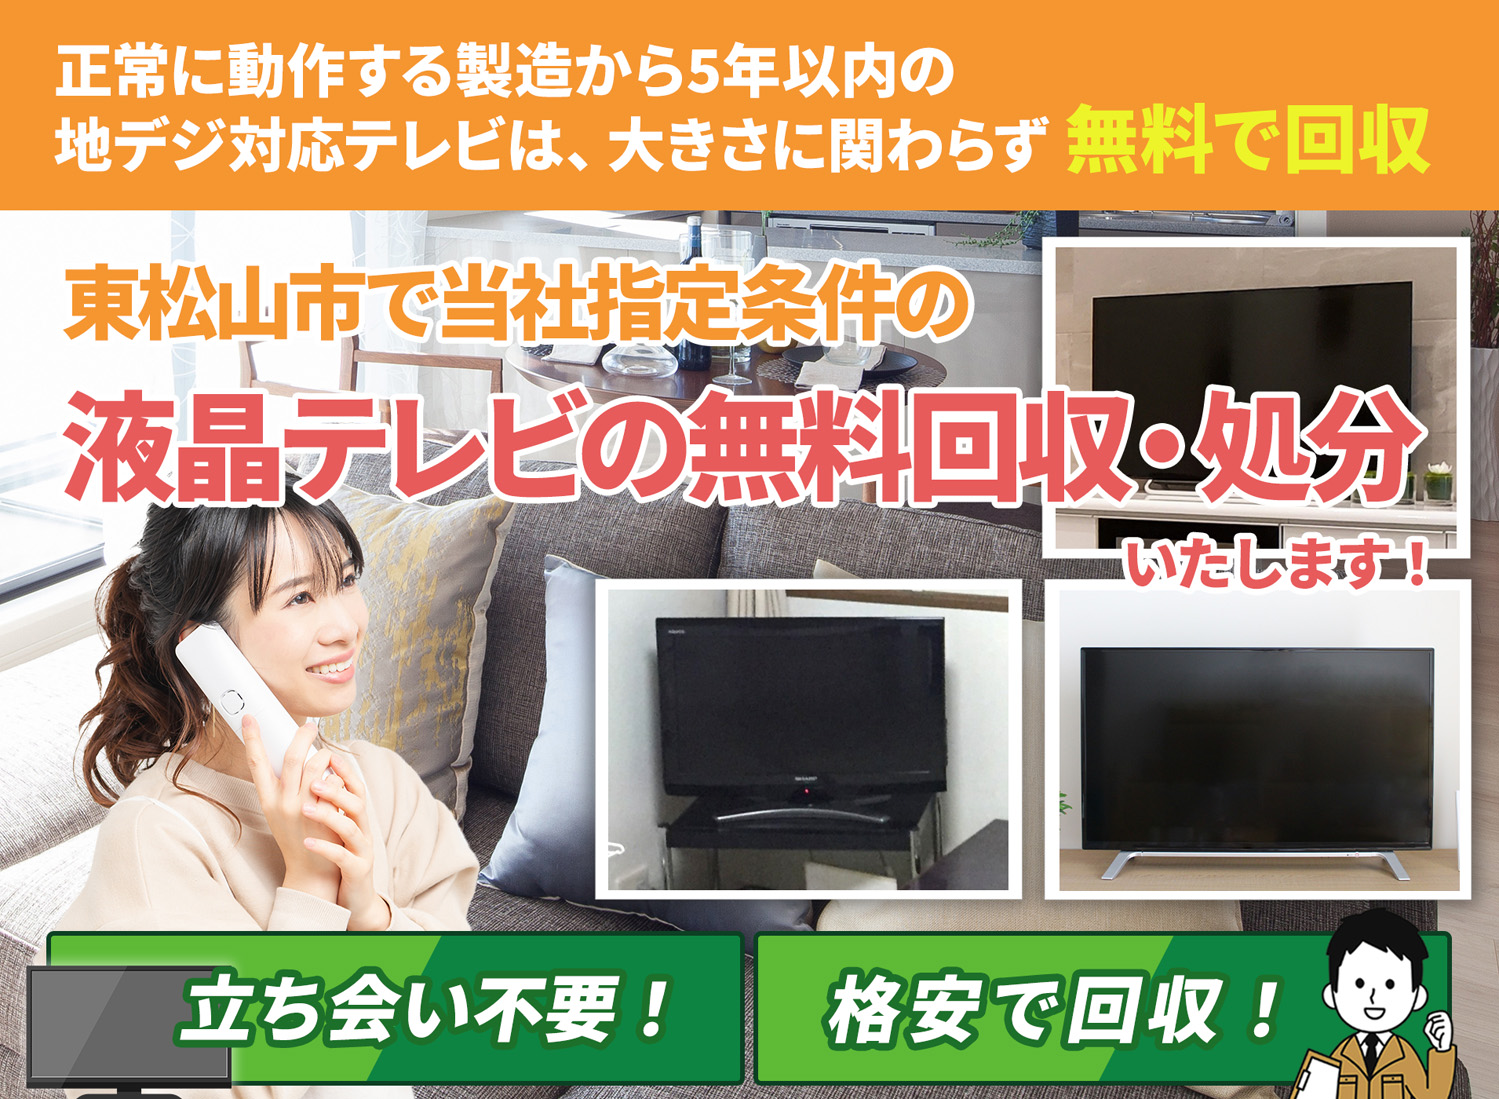 東松山市のサービスで地域一番を目指す液晶テレビ無料回収処分隊の液晶テレビ無料回収サービス